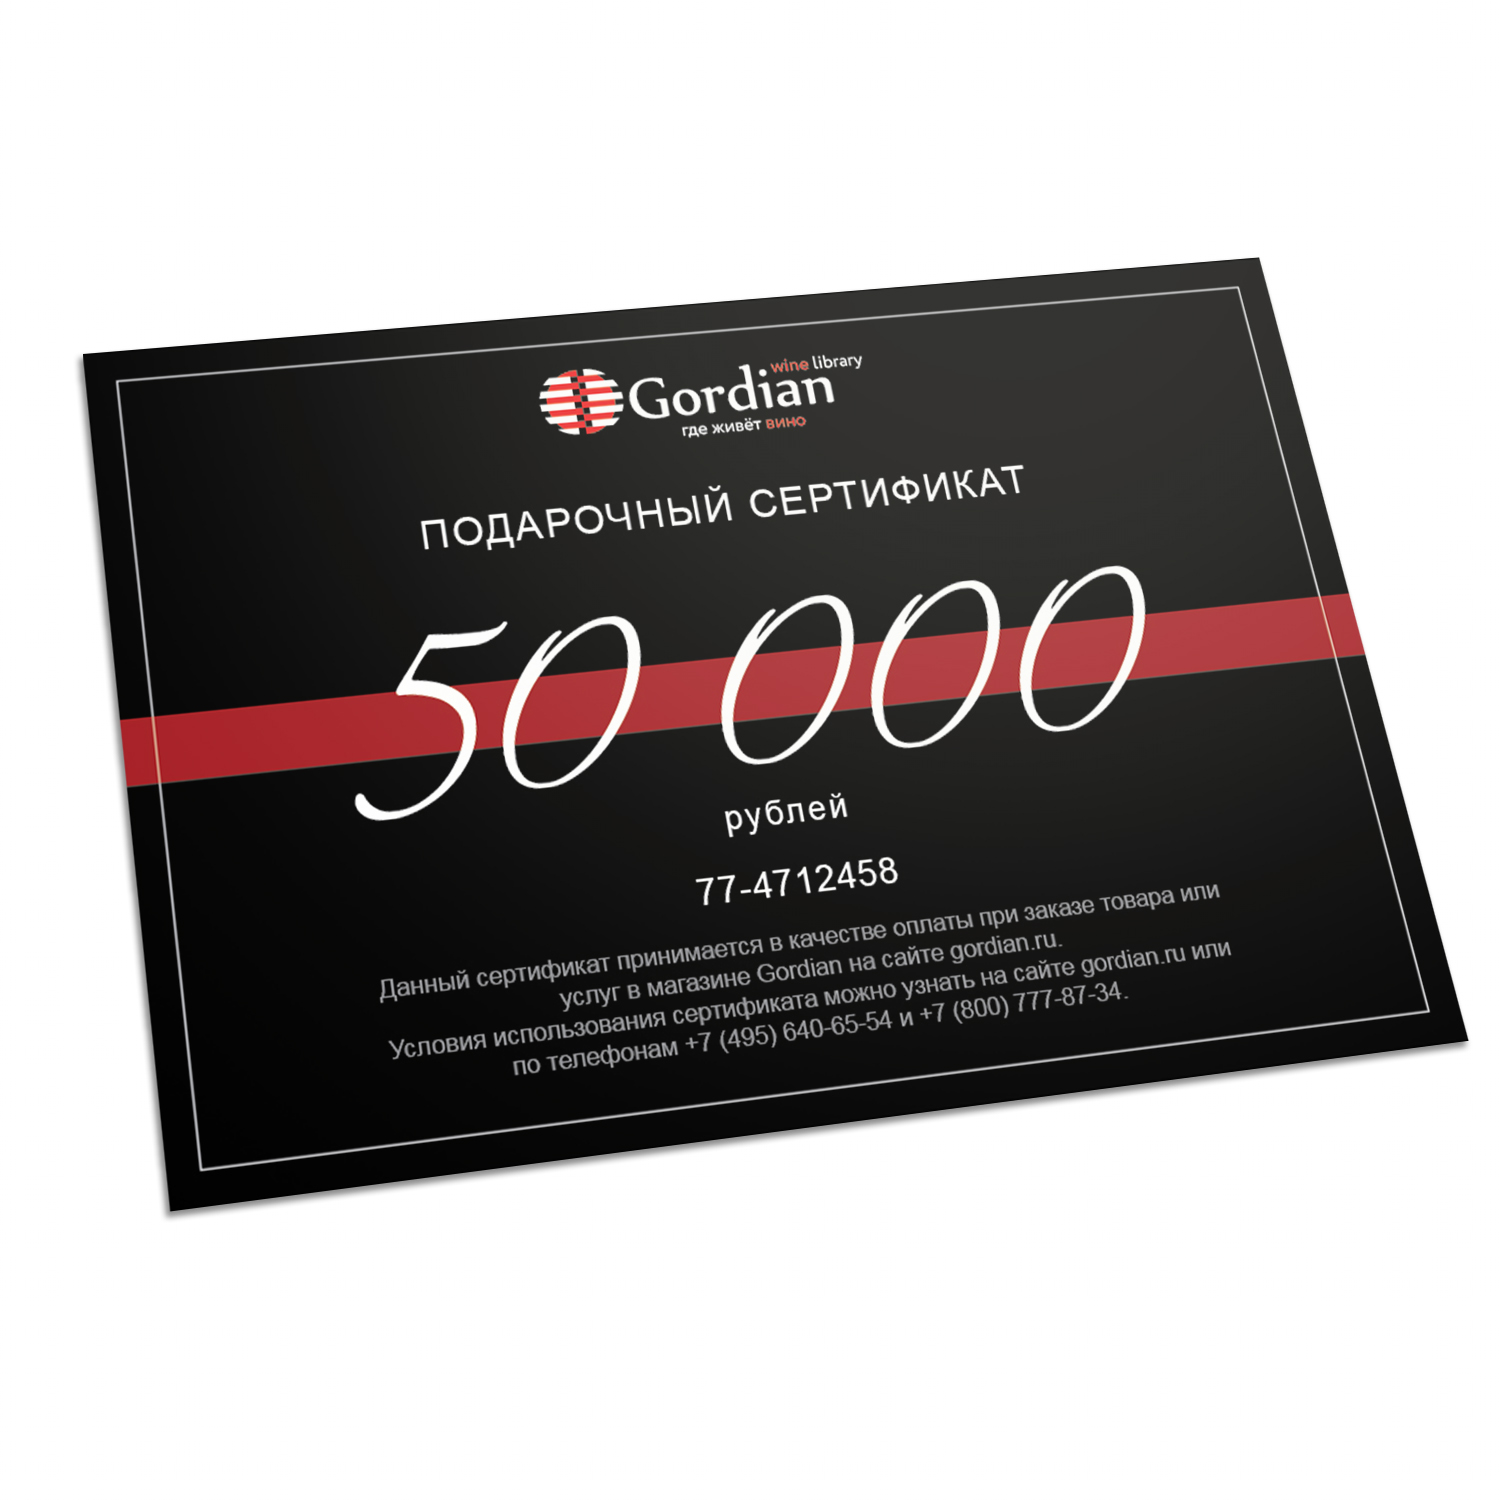 Подарочный сертификат Gordian Wine Номинал 50.000 руб.